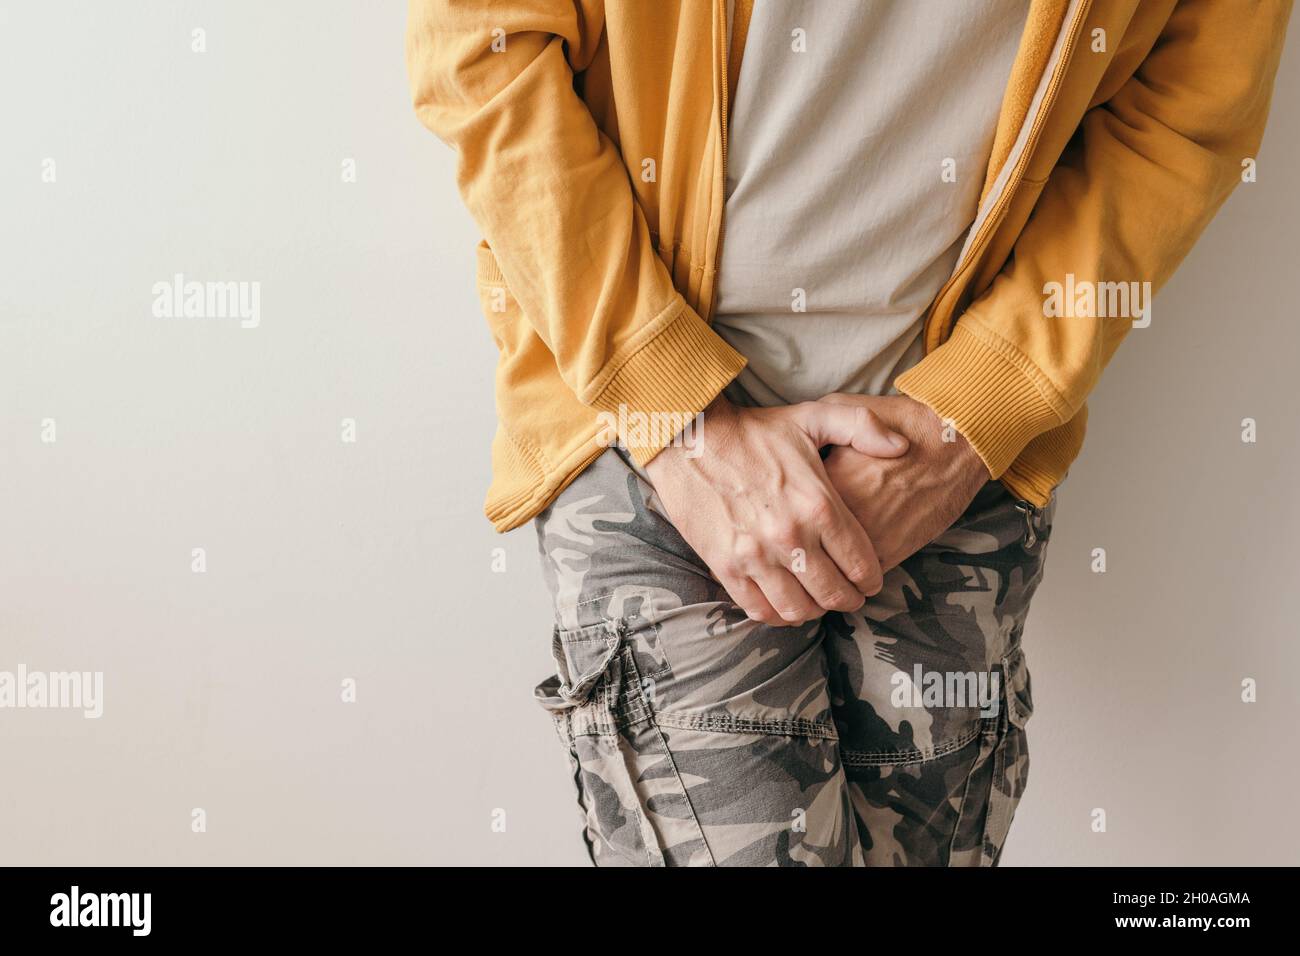 Prostatitis, schmerzende Schmerzen im Unterbauch Symptome für Erwachsene männliche Person Stockfoto